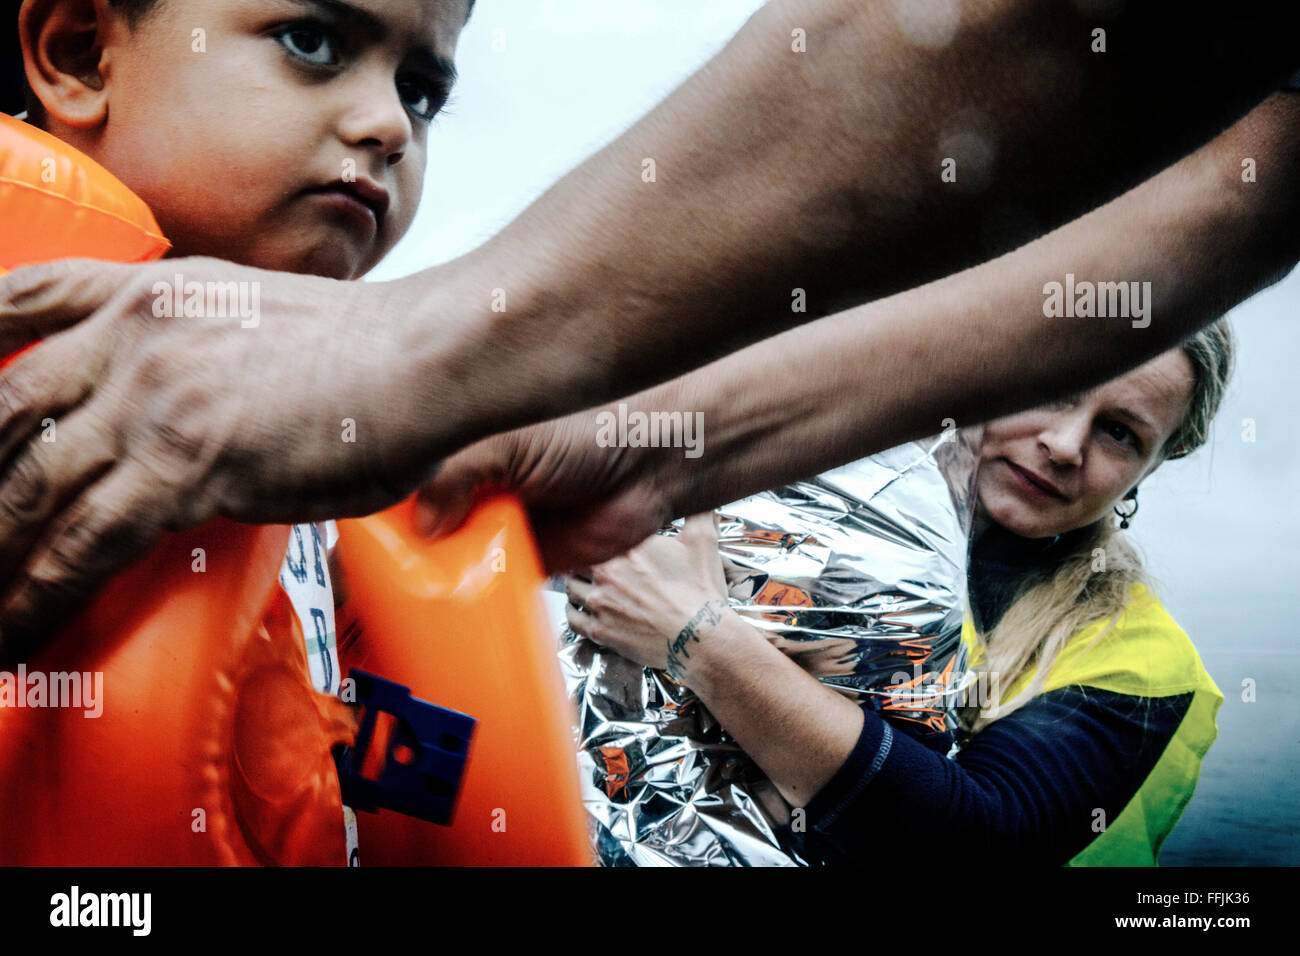 Bénévole de la Hollande aide un enfant réfugié qui vient d'arriver par bateau flottant à la partie nord de Lesbos Banque D'Images